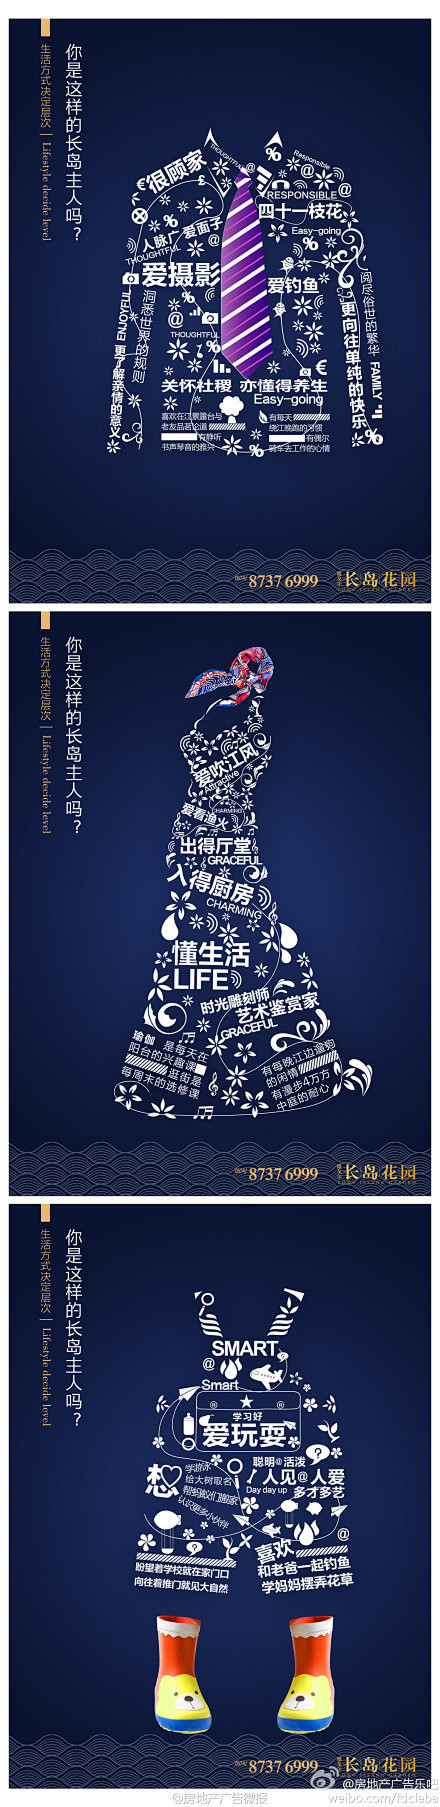 2012年意大利社会传达海报比赛获奖作品欣赏_平面设计_海报设计_佳作